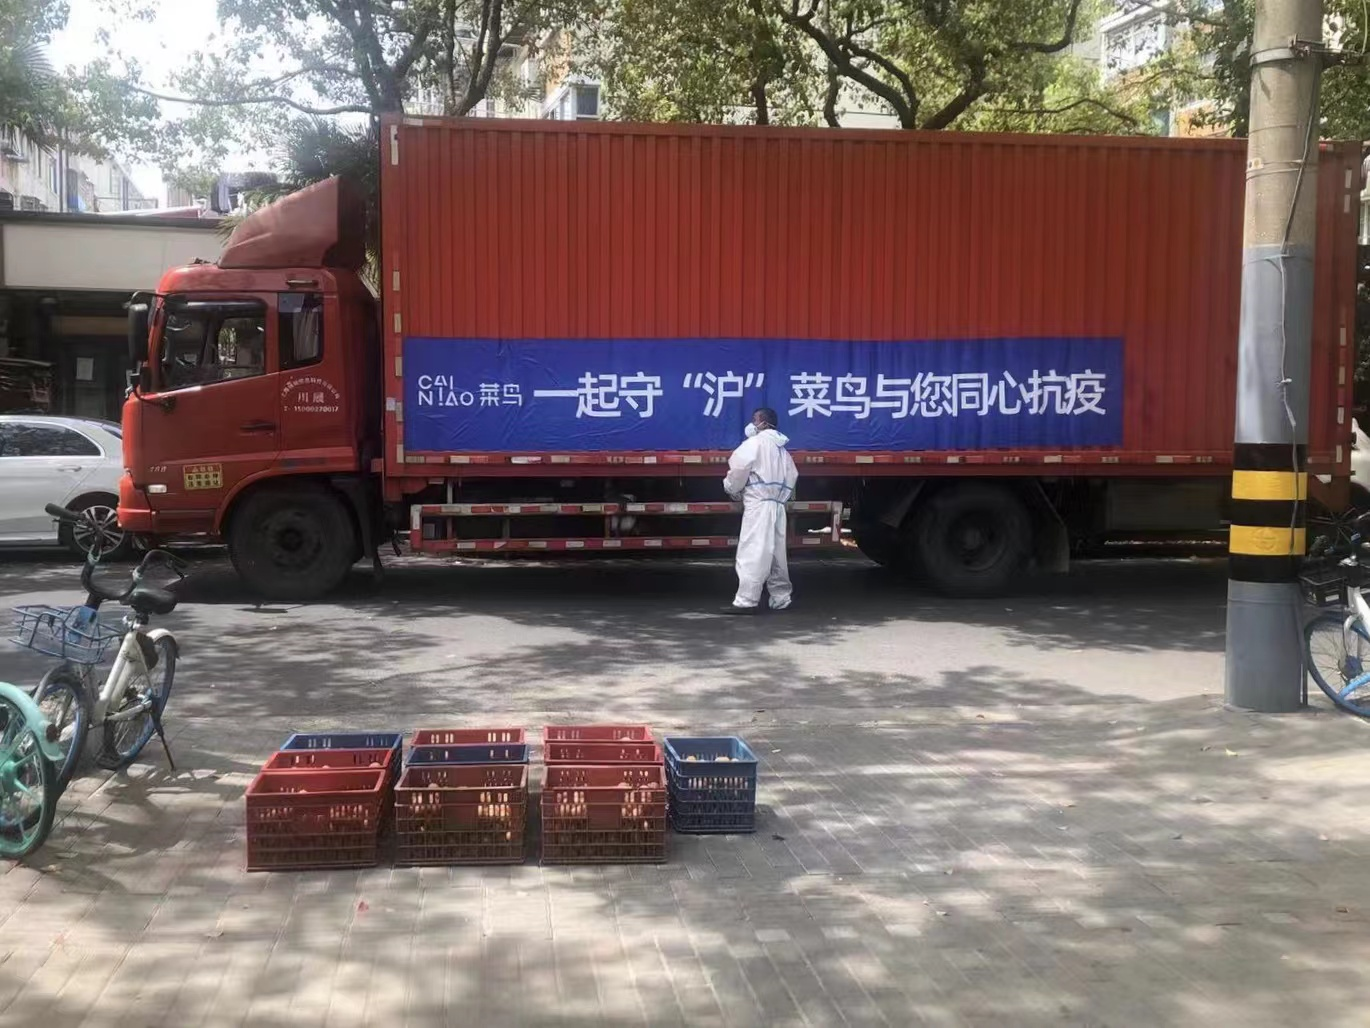 菜鸟加开“助老专车”为上海养老院送菜